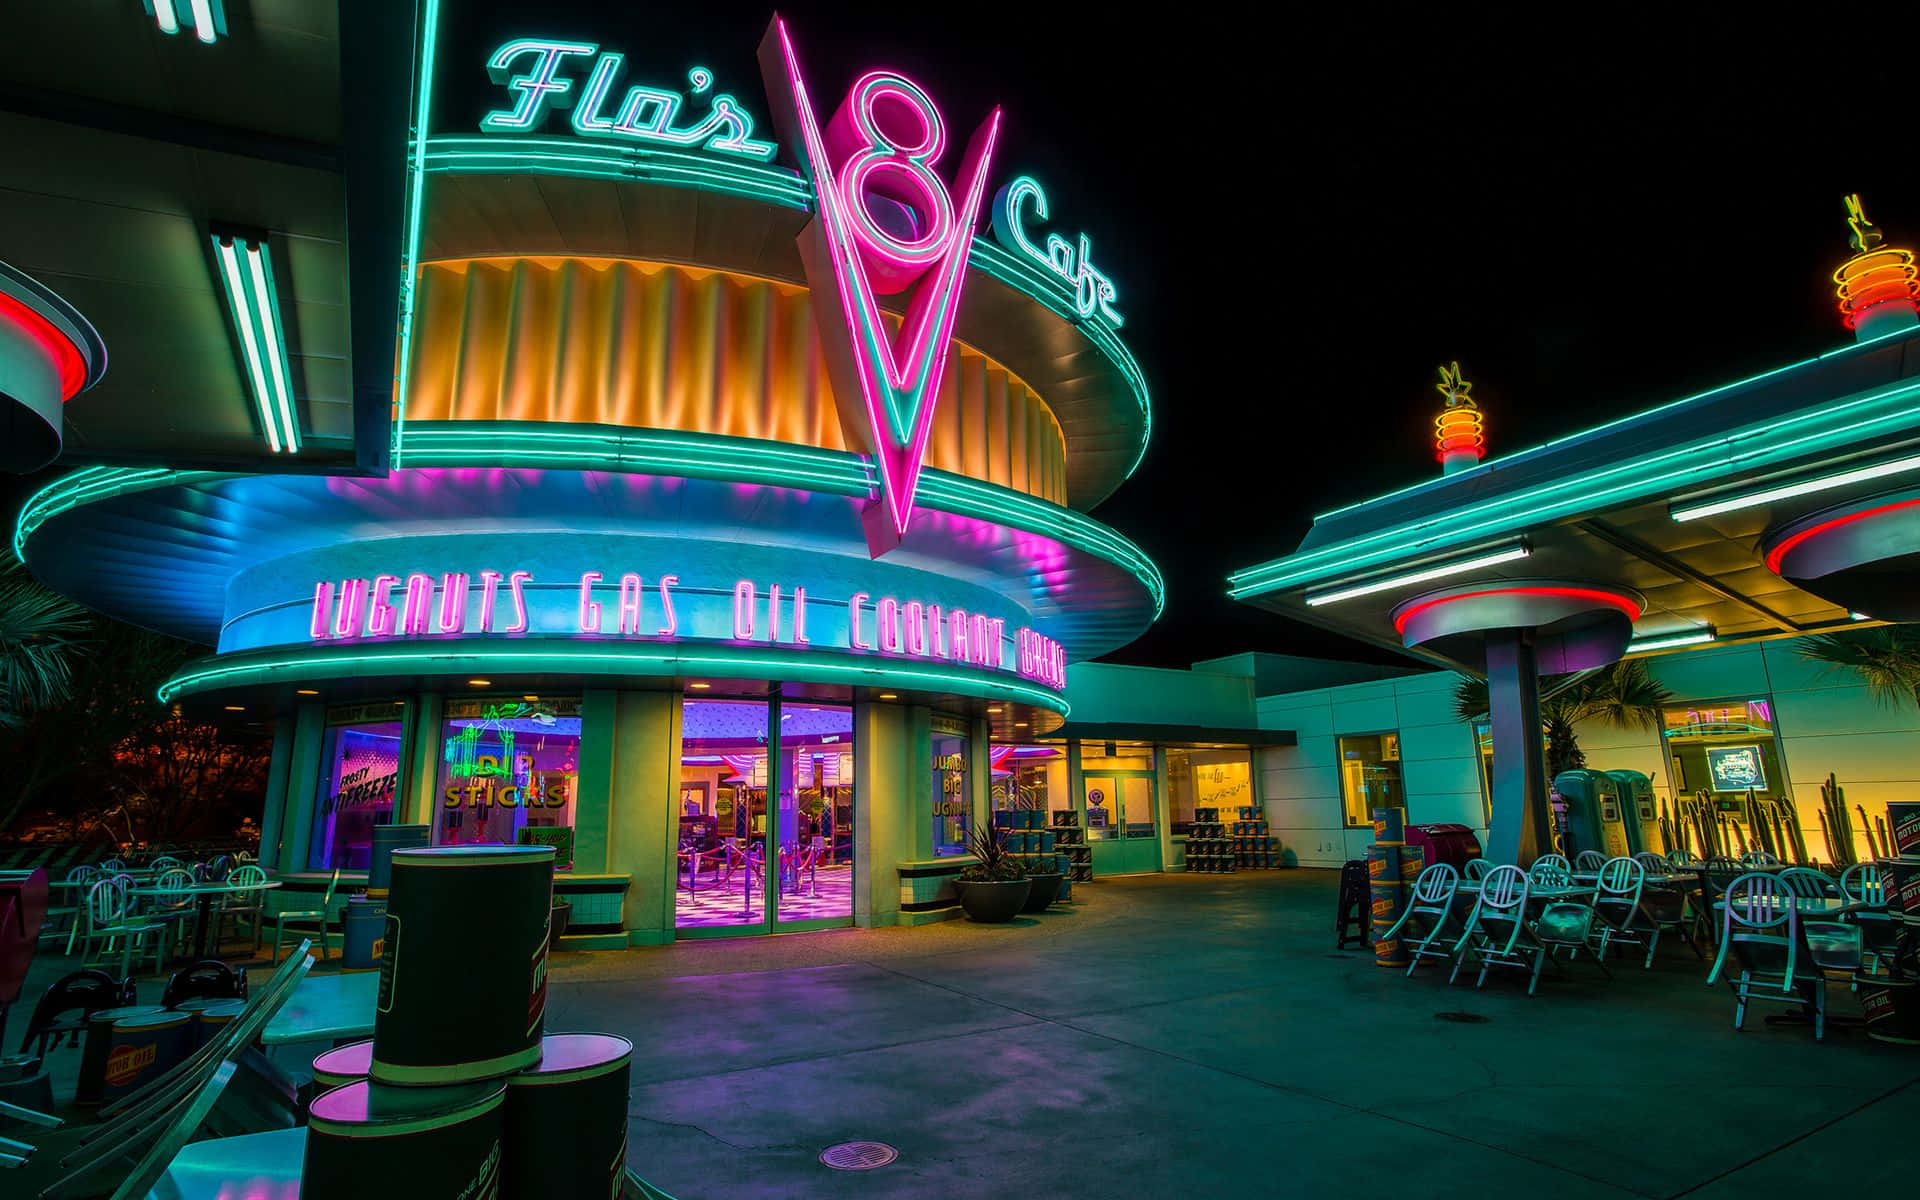 Flo'sv8 Cafe Retro Diner - width=